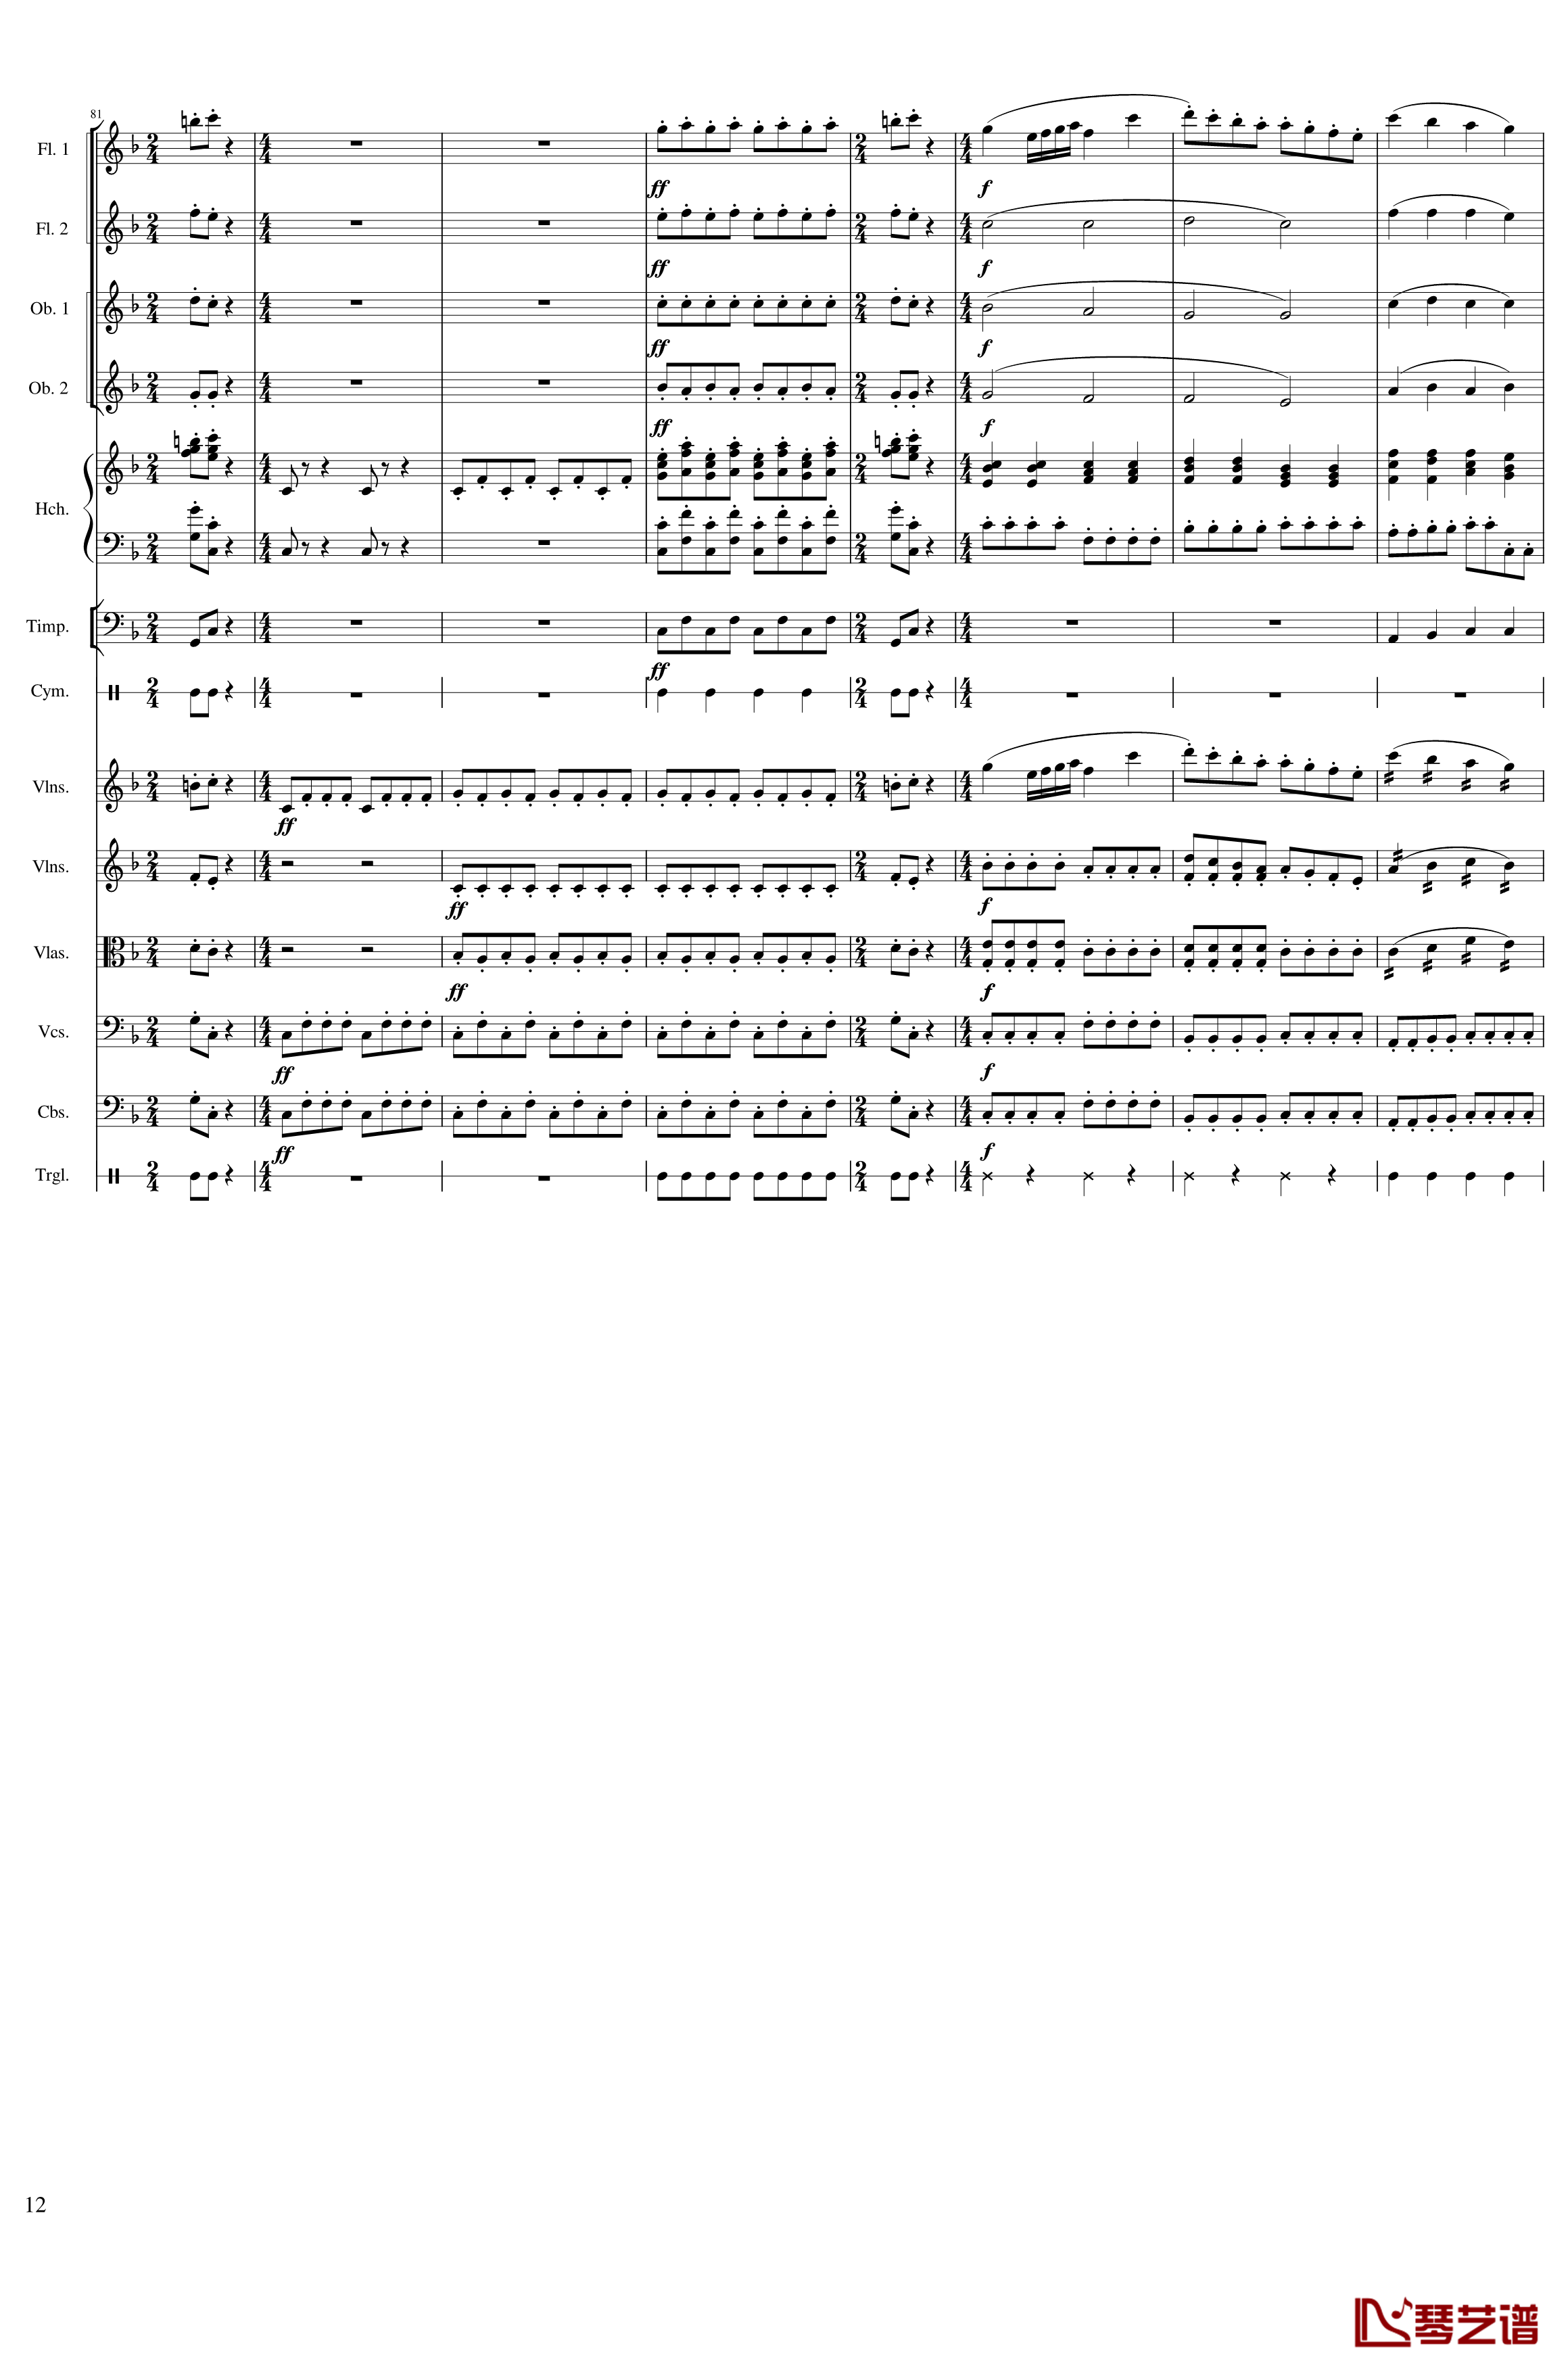 春节序曲钢琴谱-作品121-一个球12